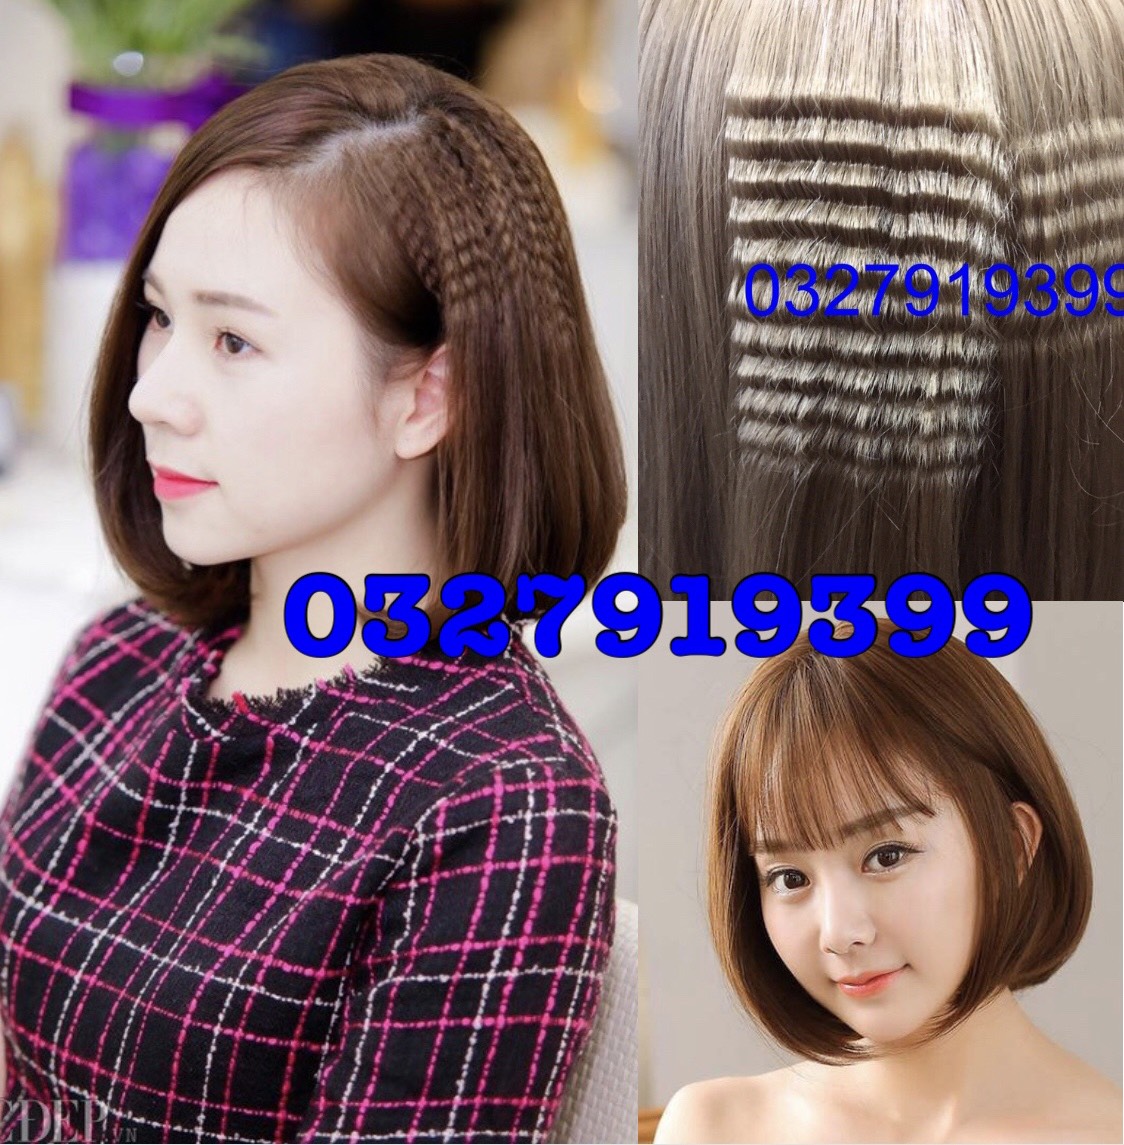 Máy bấm tóc thay bản Hàn Quốc cao cấp 888